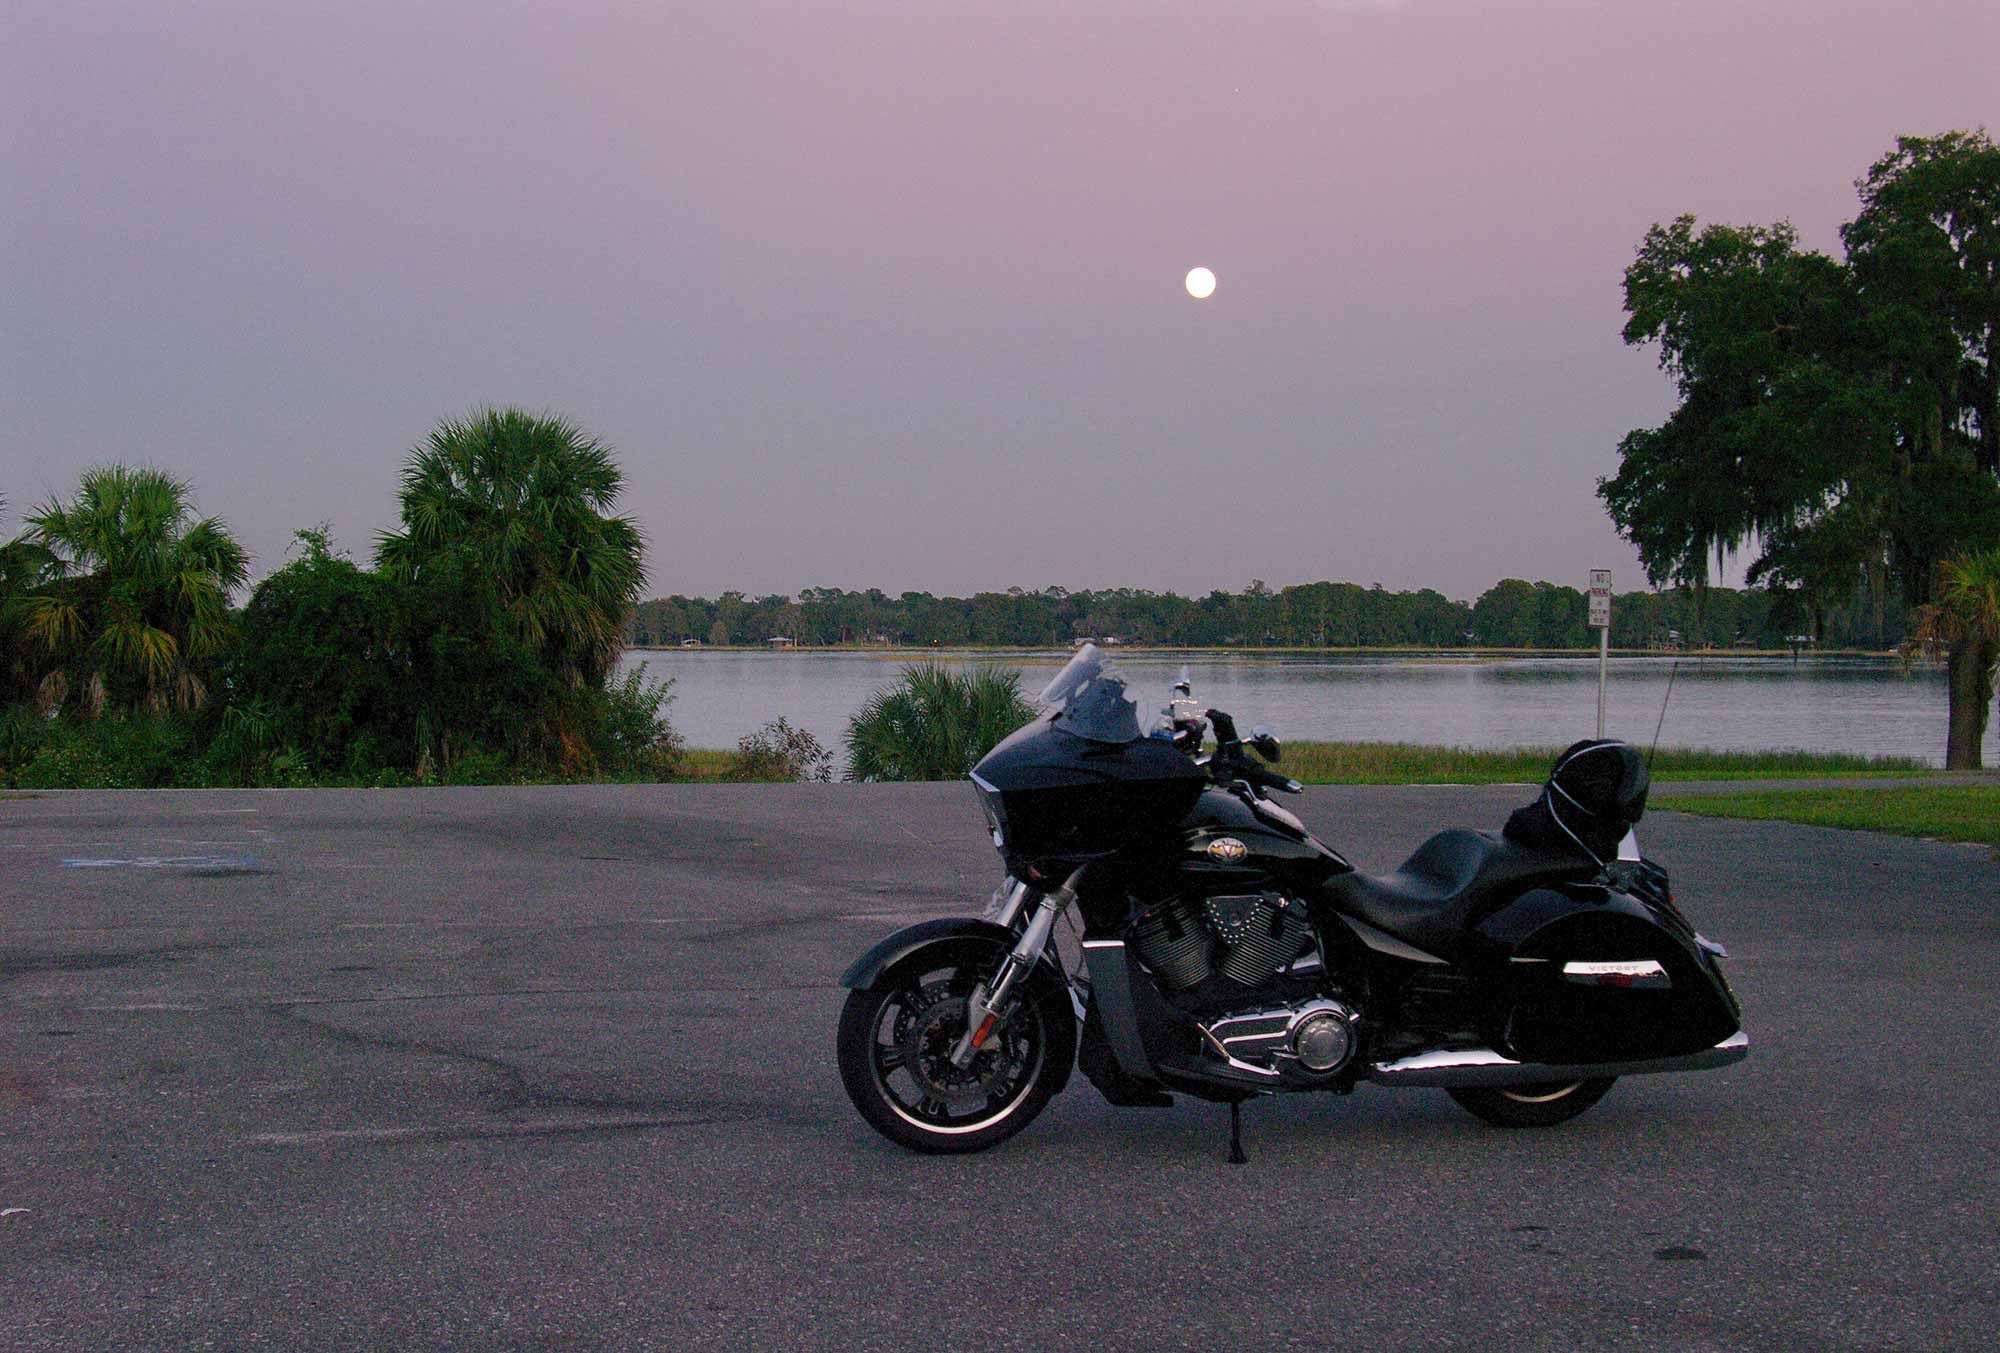 A full moon rises over Lake Hernando, Florida.